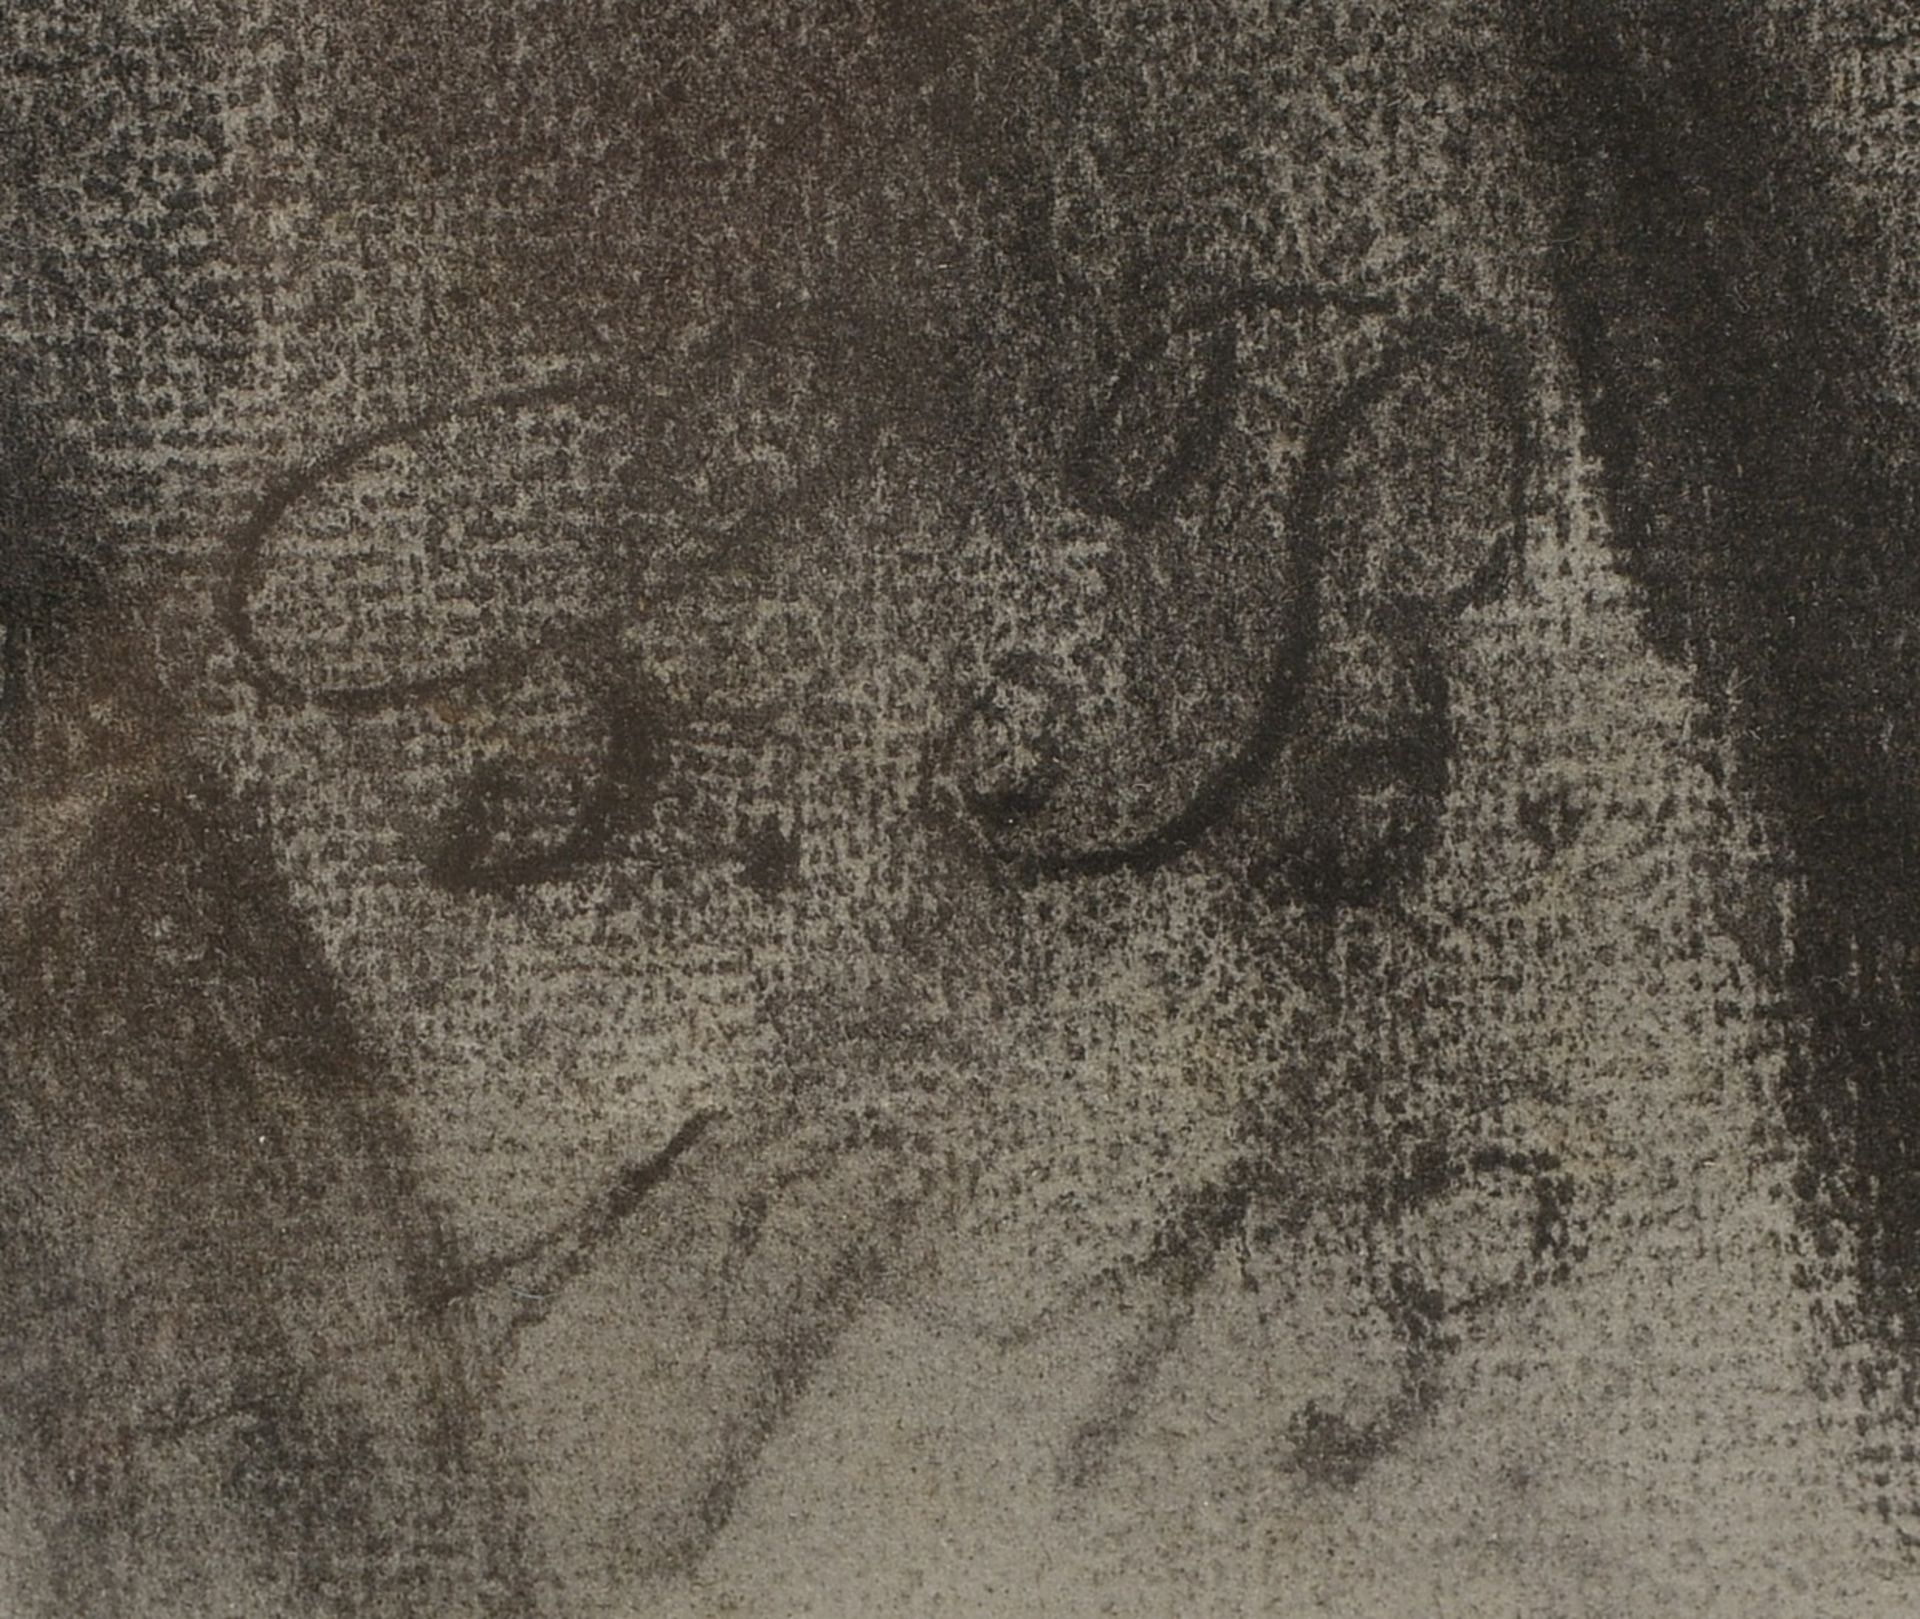 Monogrammistin S.B., 'Frauenportrait', Kohlezeichnung, im Blatt monogrammiert 'SB' und datiert '1913 - Bild 2 aus 2